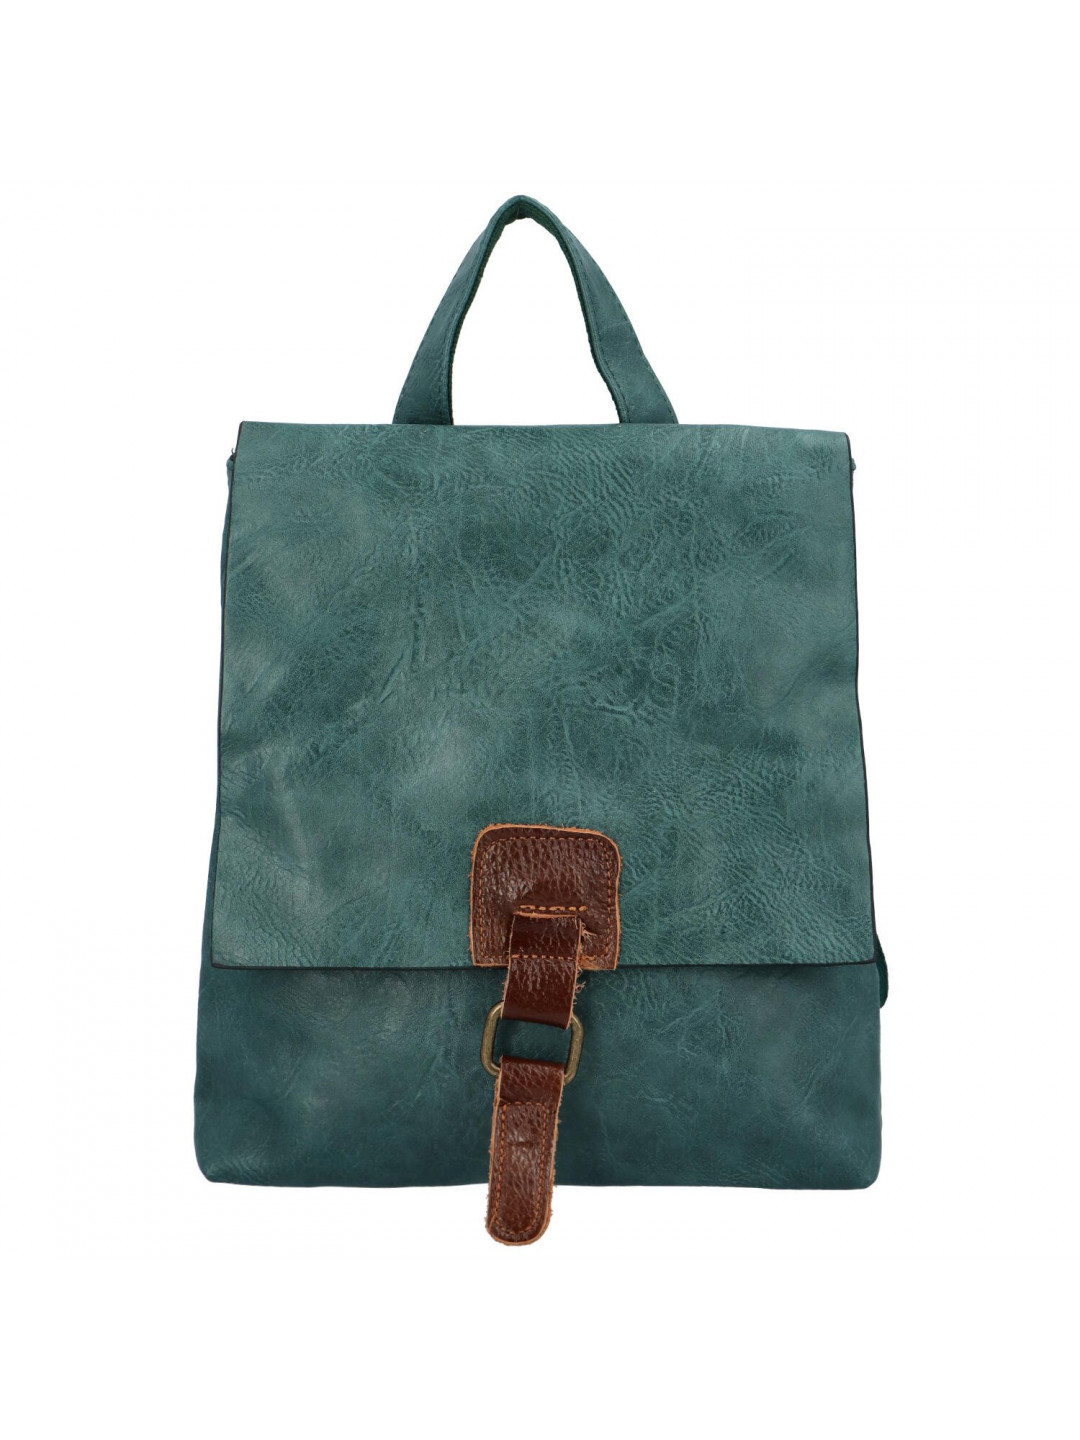 Městský stylový koženkový batoh Enjoy zelenomodrá